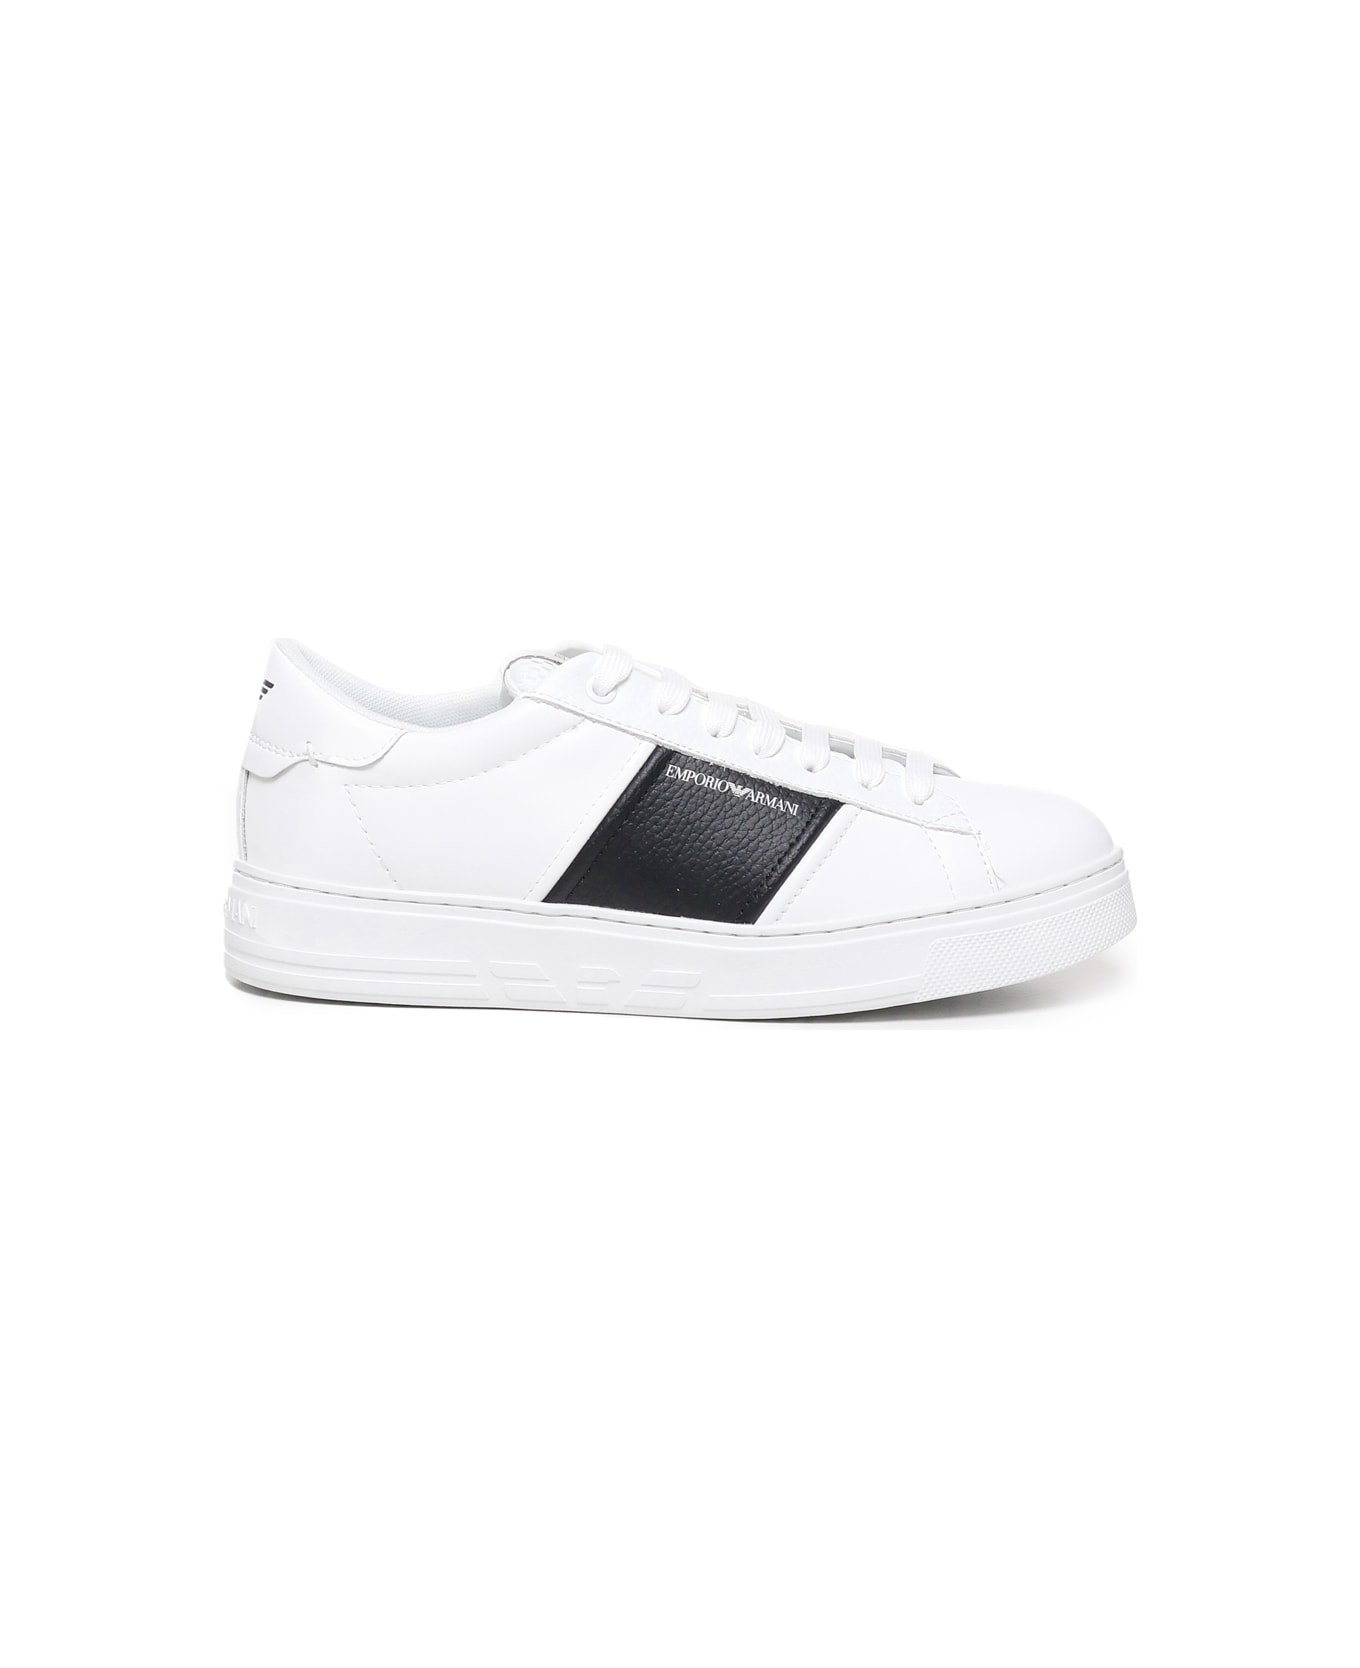 Emporio Armani Leather Sneakers With Logo - White